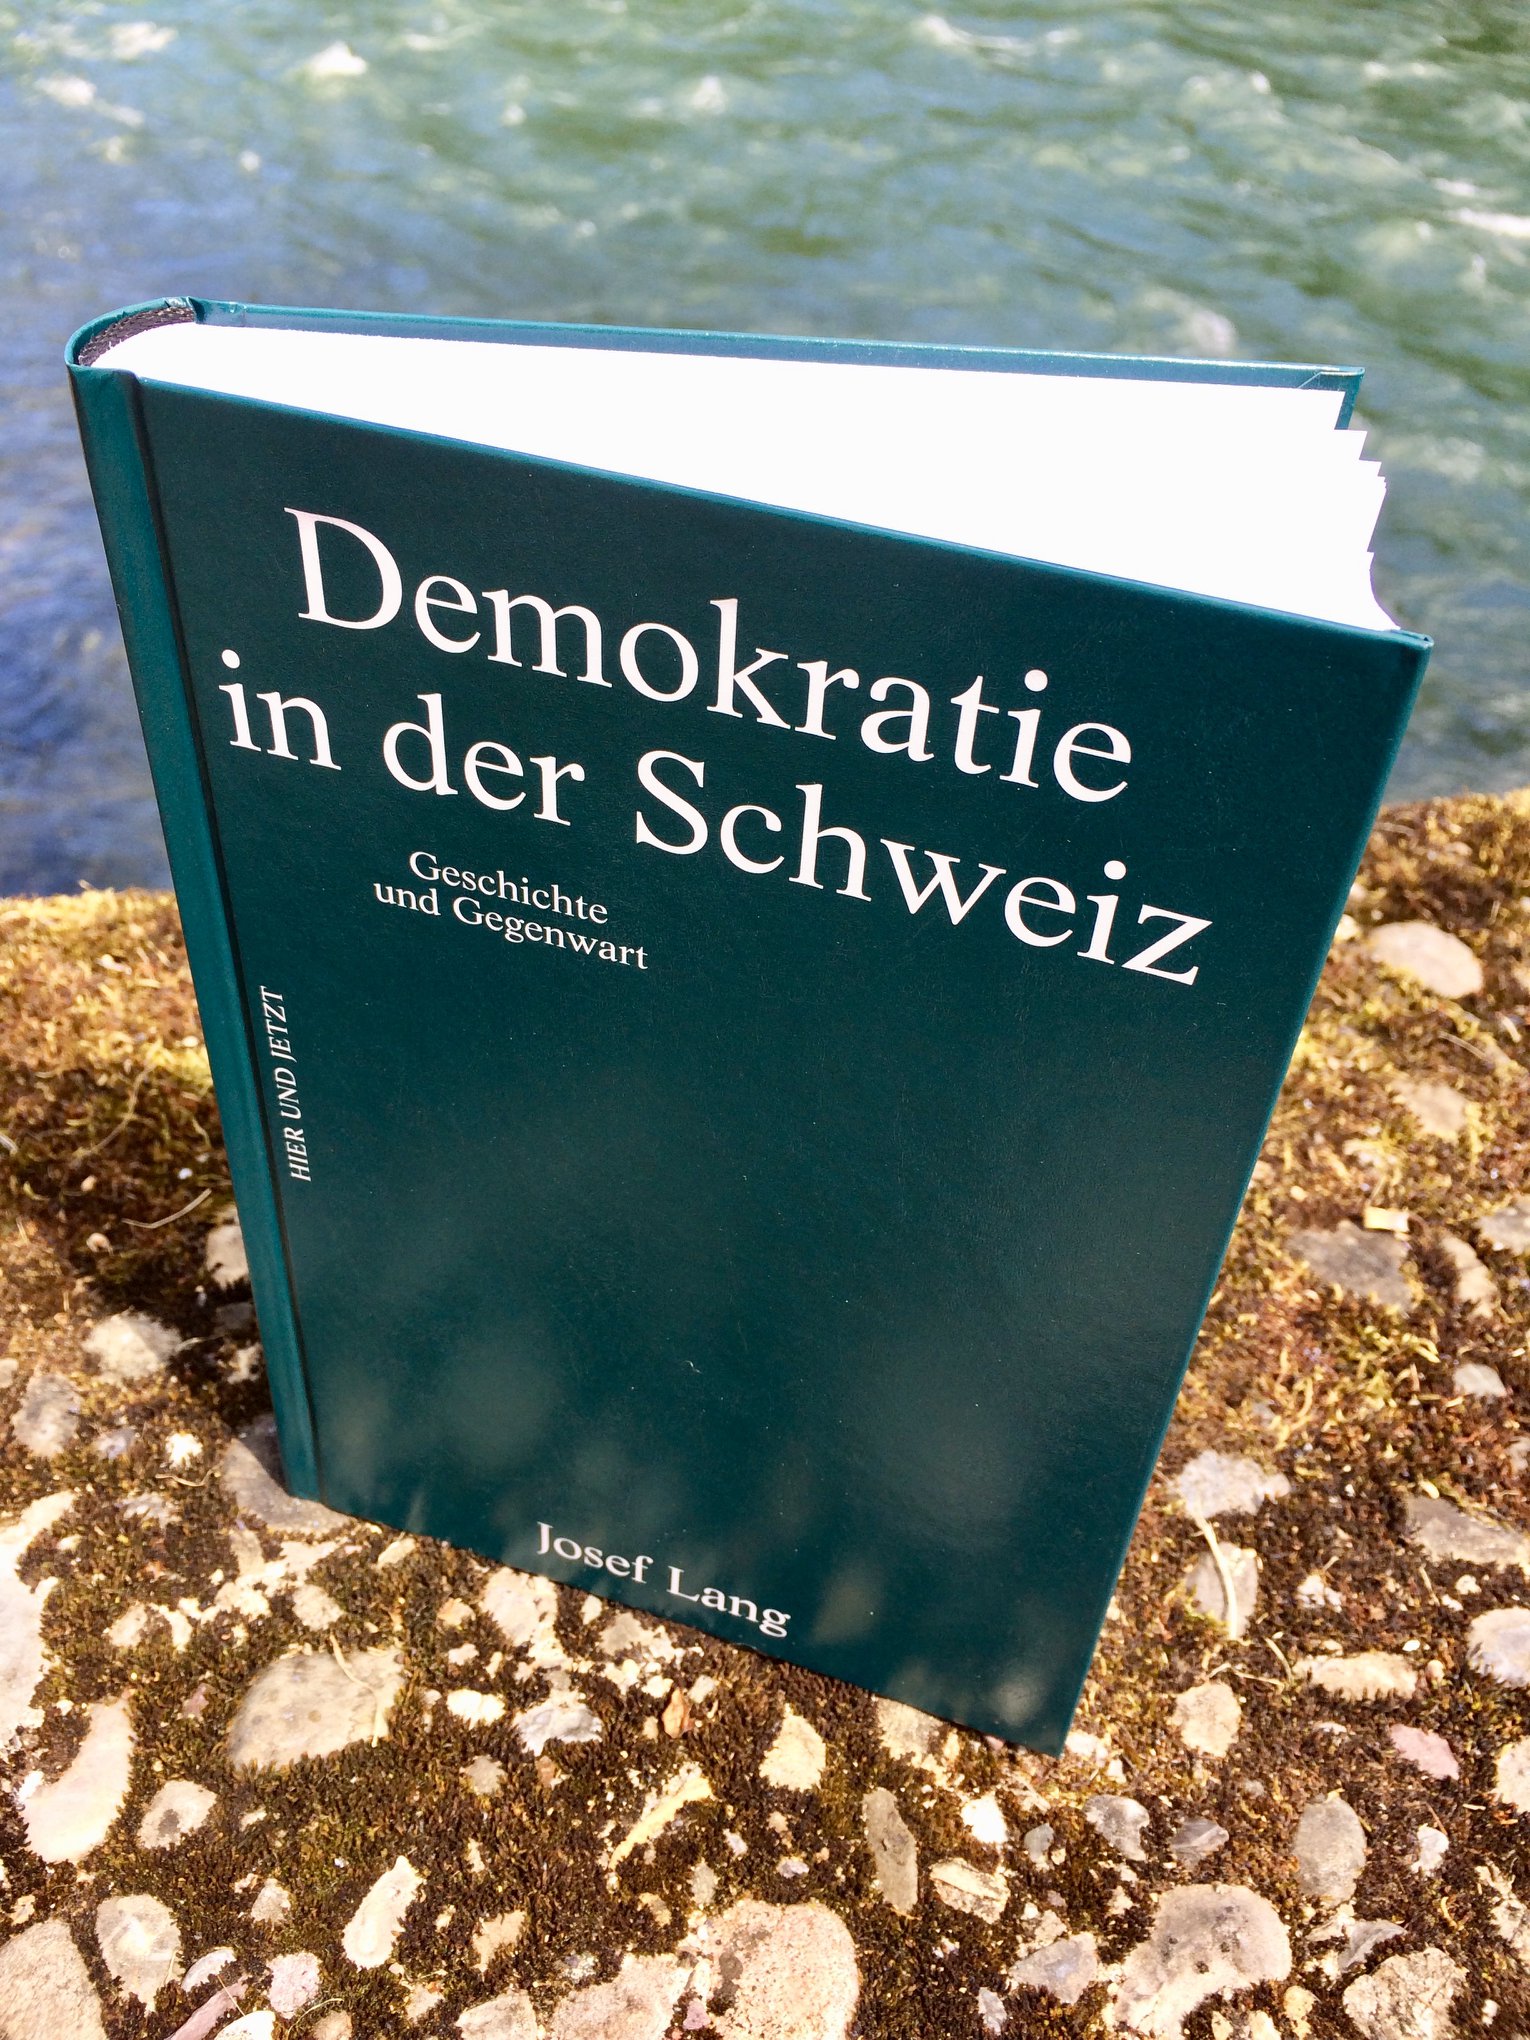 Josef Lang stellt sein Buch "Demokratie in der Schweiz" vor